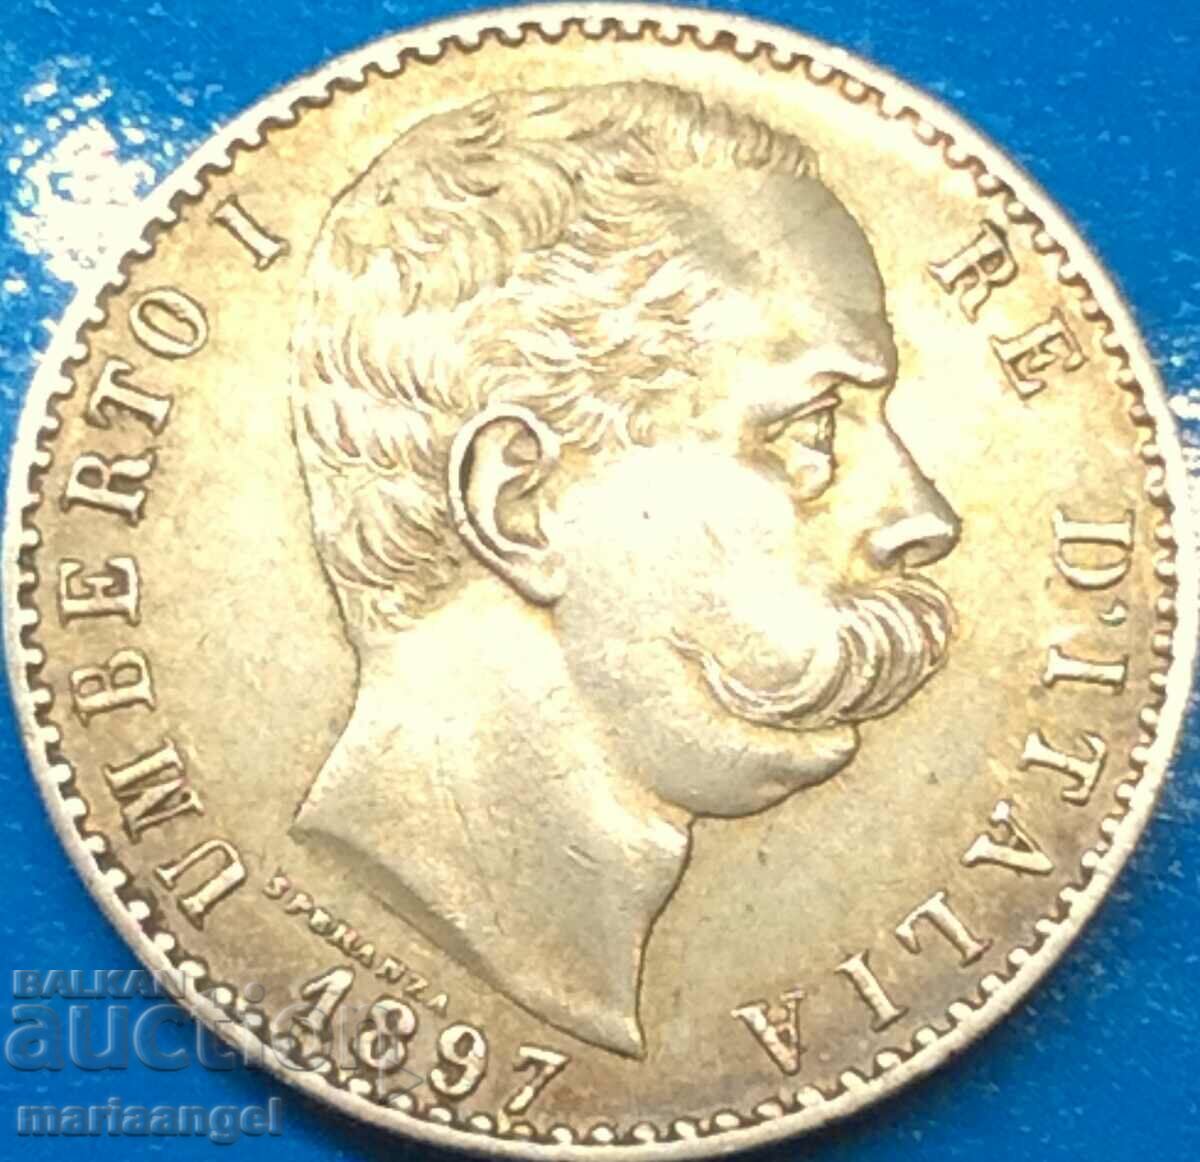 2 lire 1897 Italia Umberto I patina de aur deschis